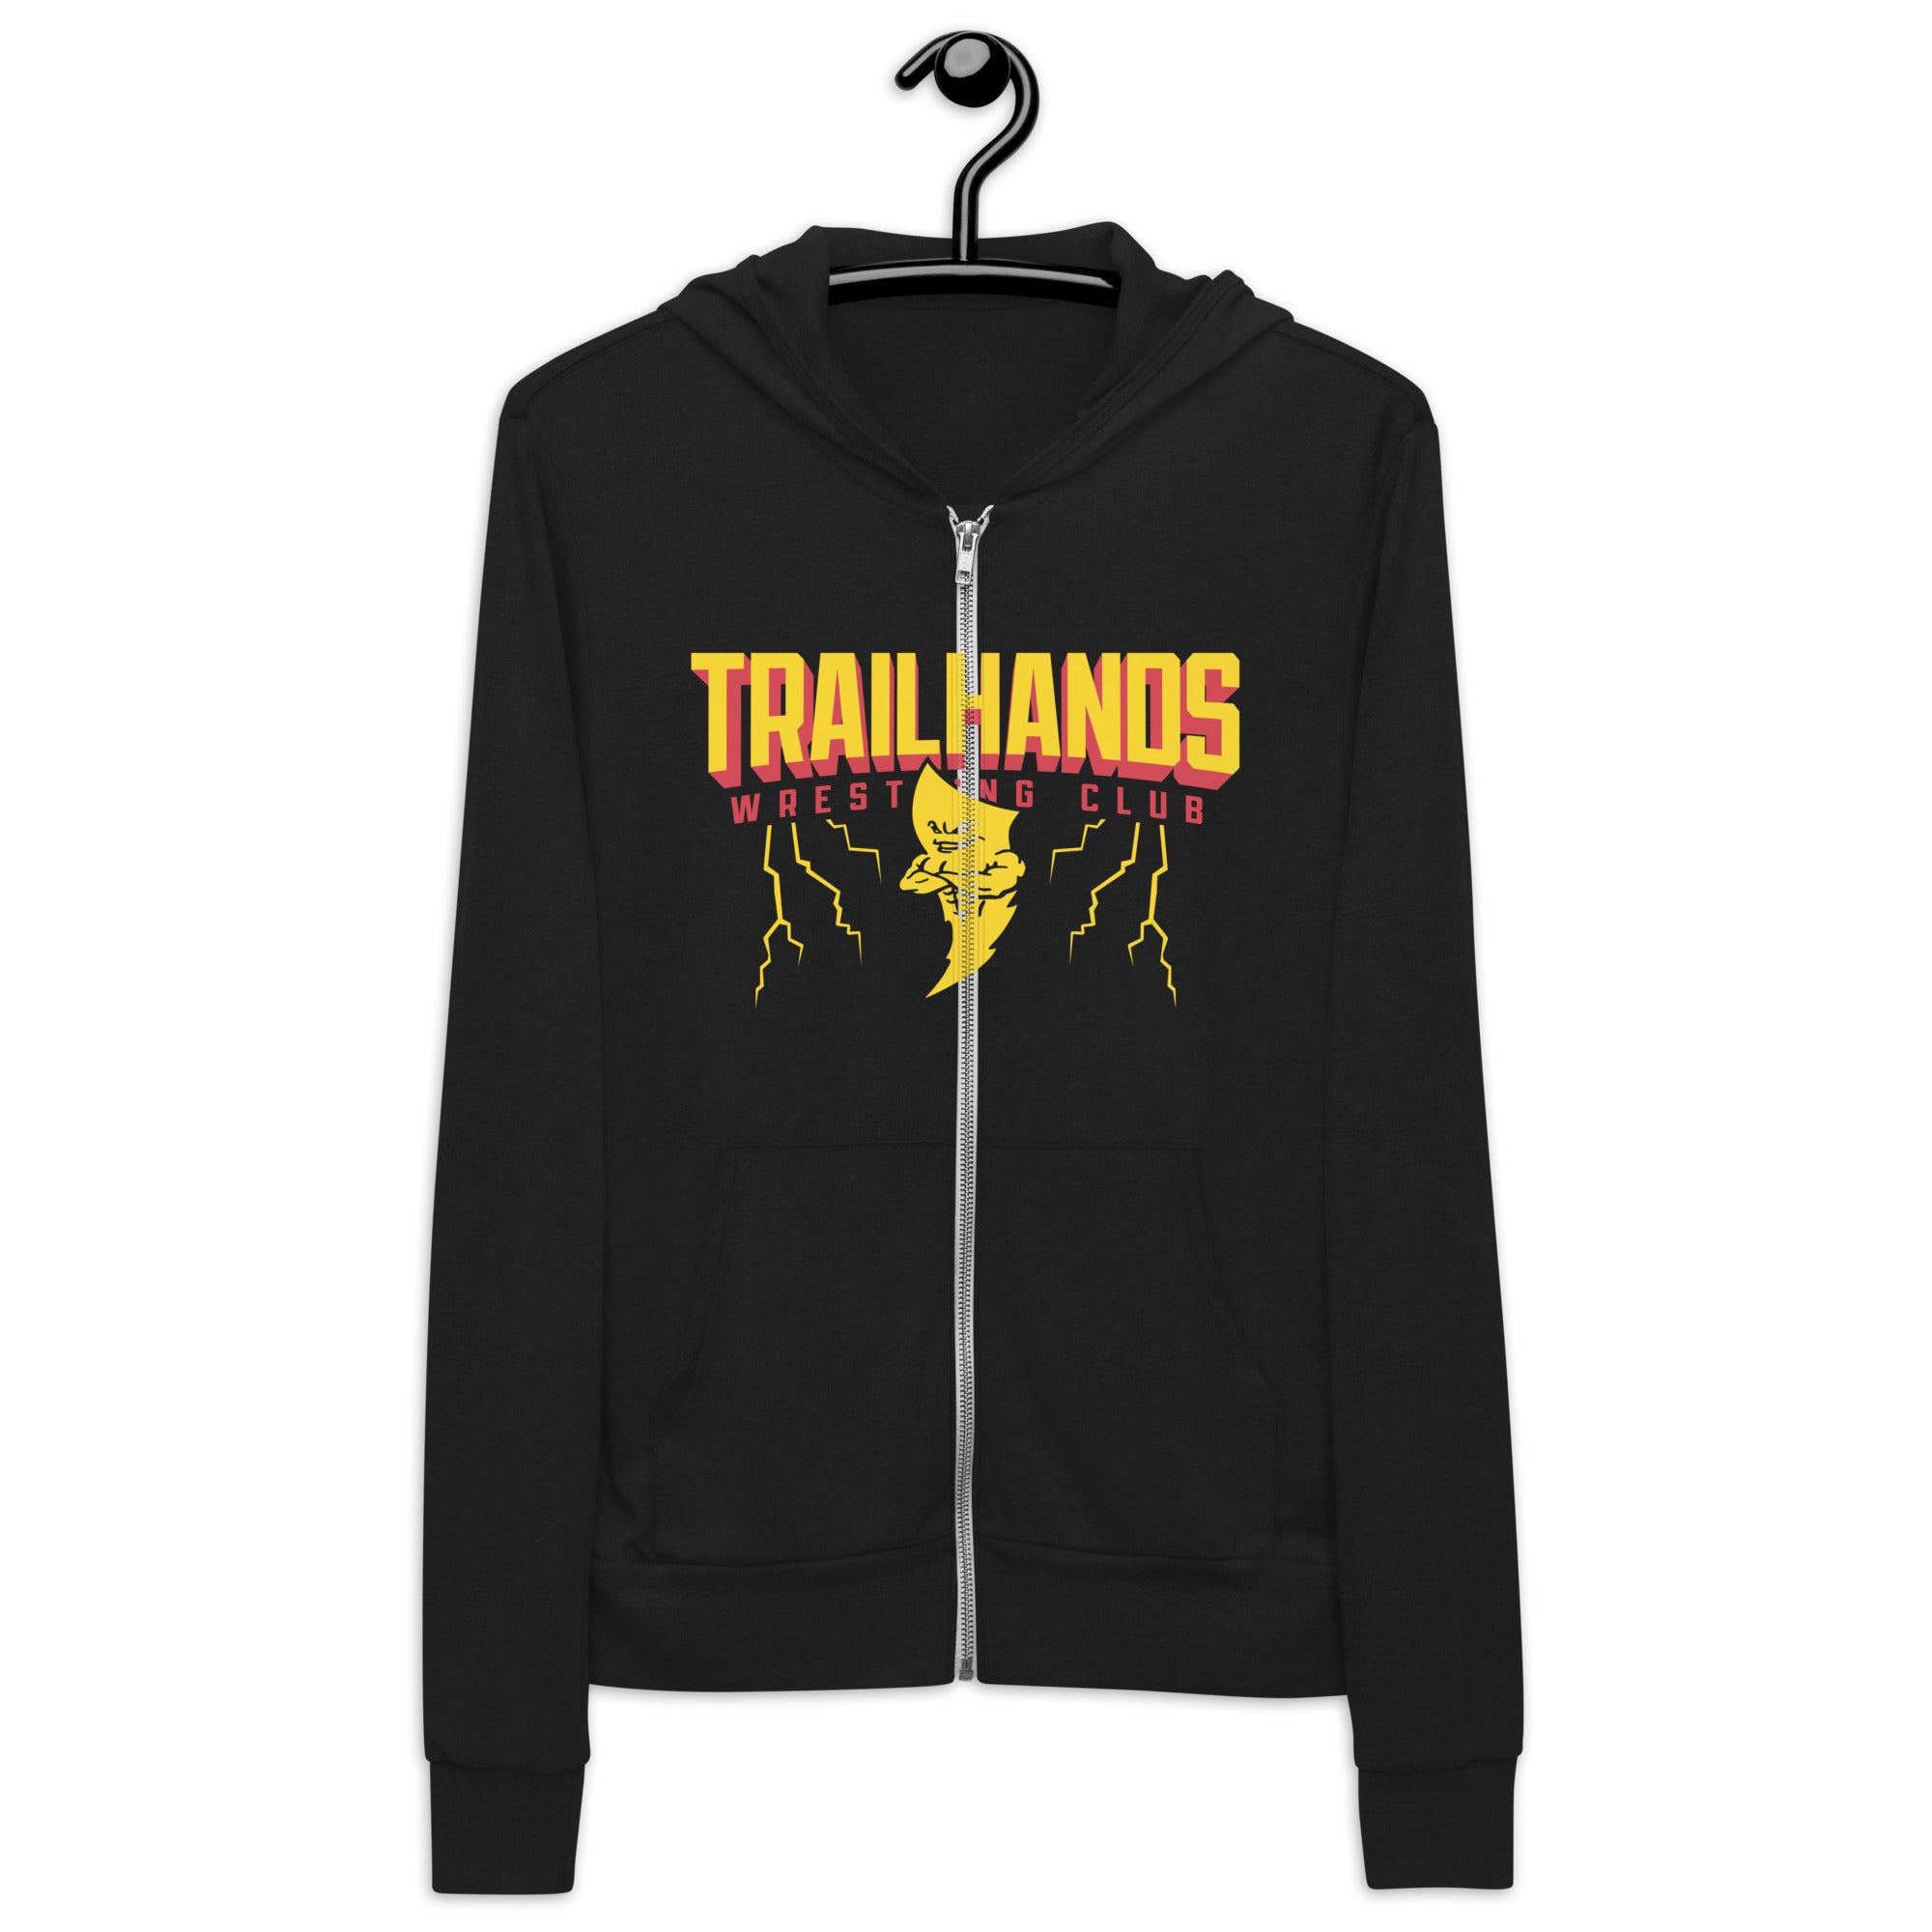 Trailhands Wrestling Club Unisex zip hoodie